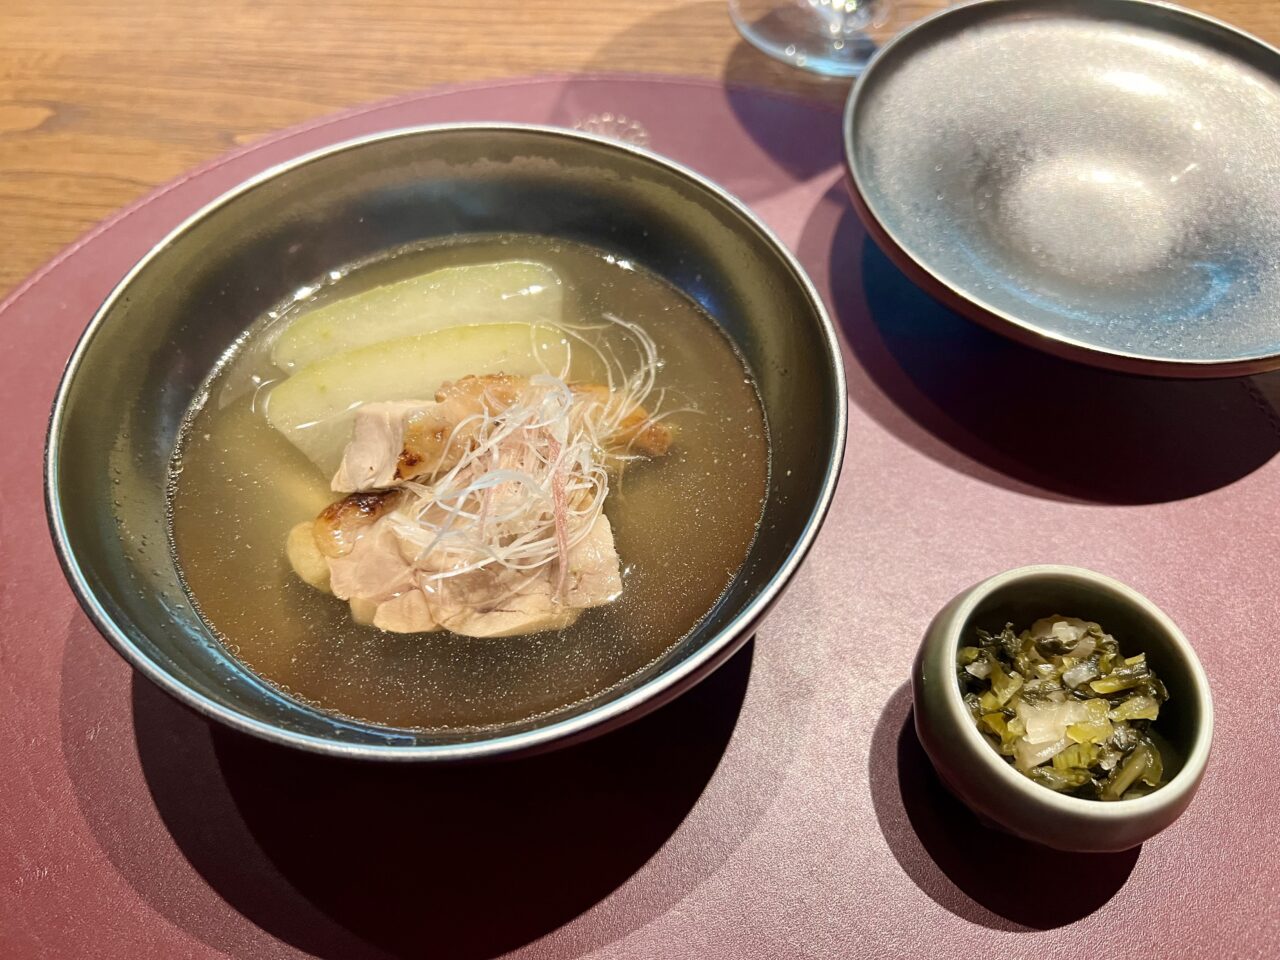 翠嵐ラグジュアリーコレクションホテル京都「京翠嵐」の季の佳(8,855円)コースの出汁です。地鶏とみょうがのお椀、 すぐきを添えて